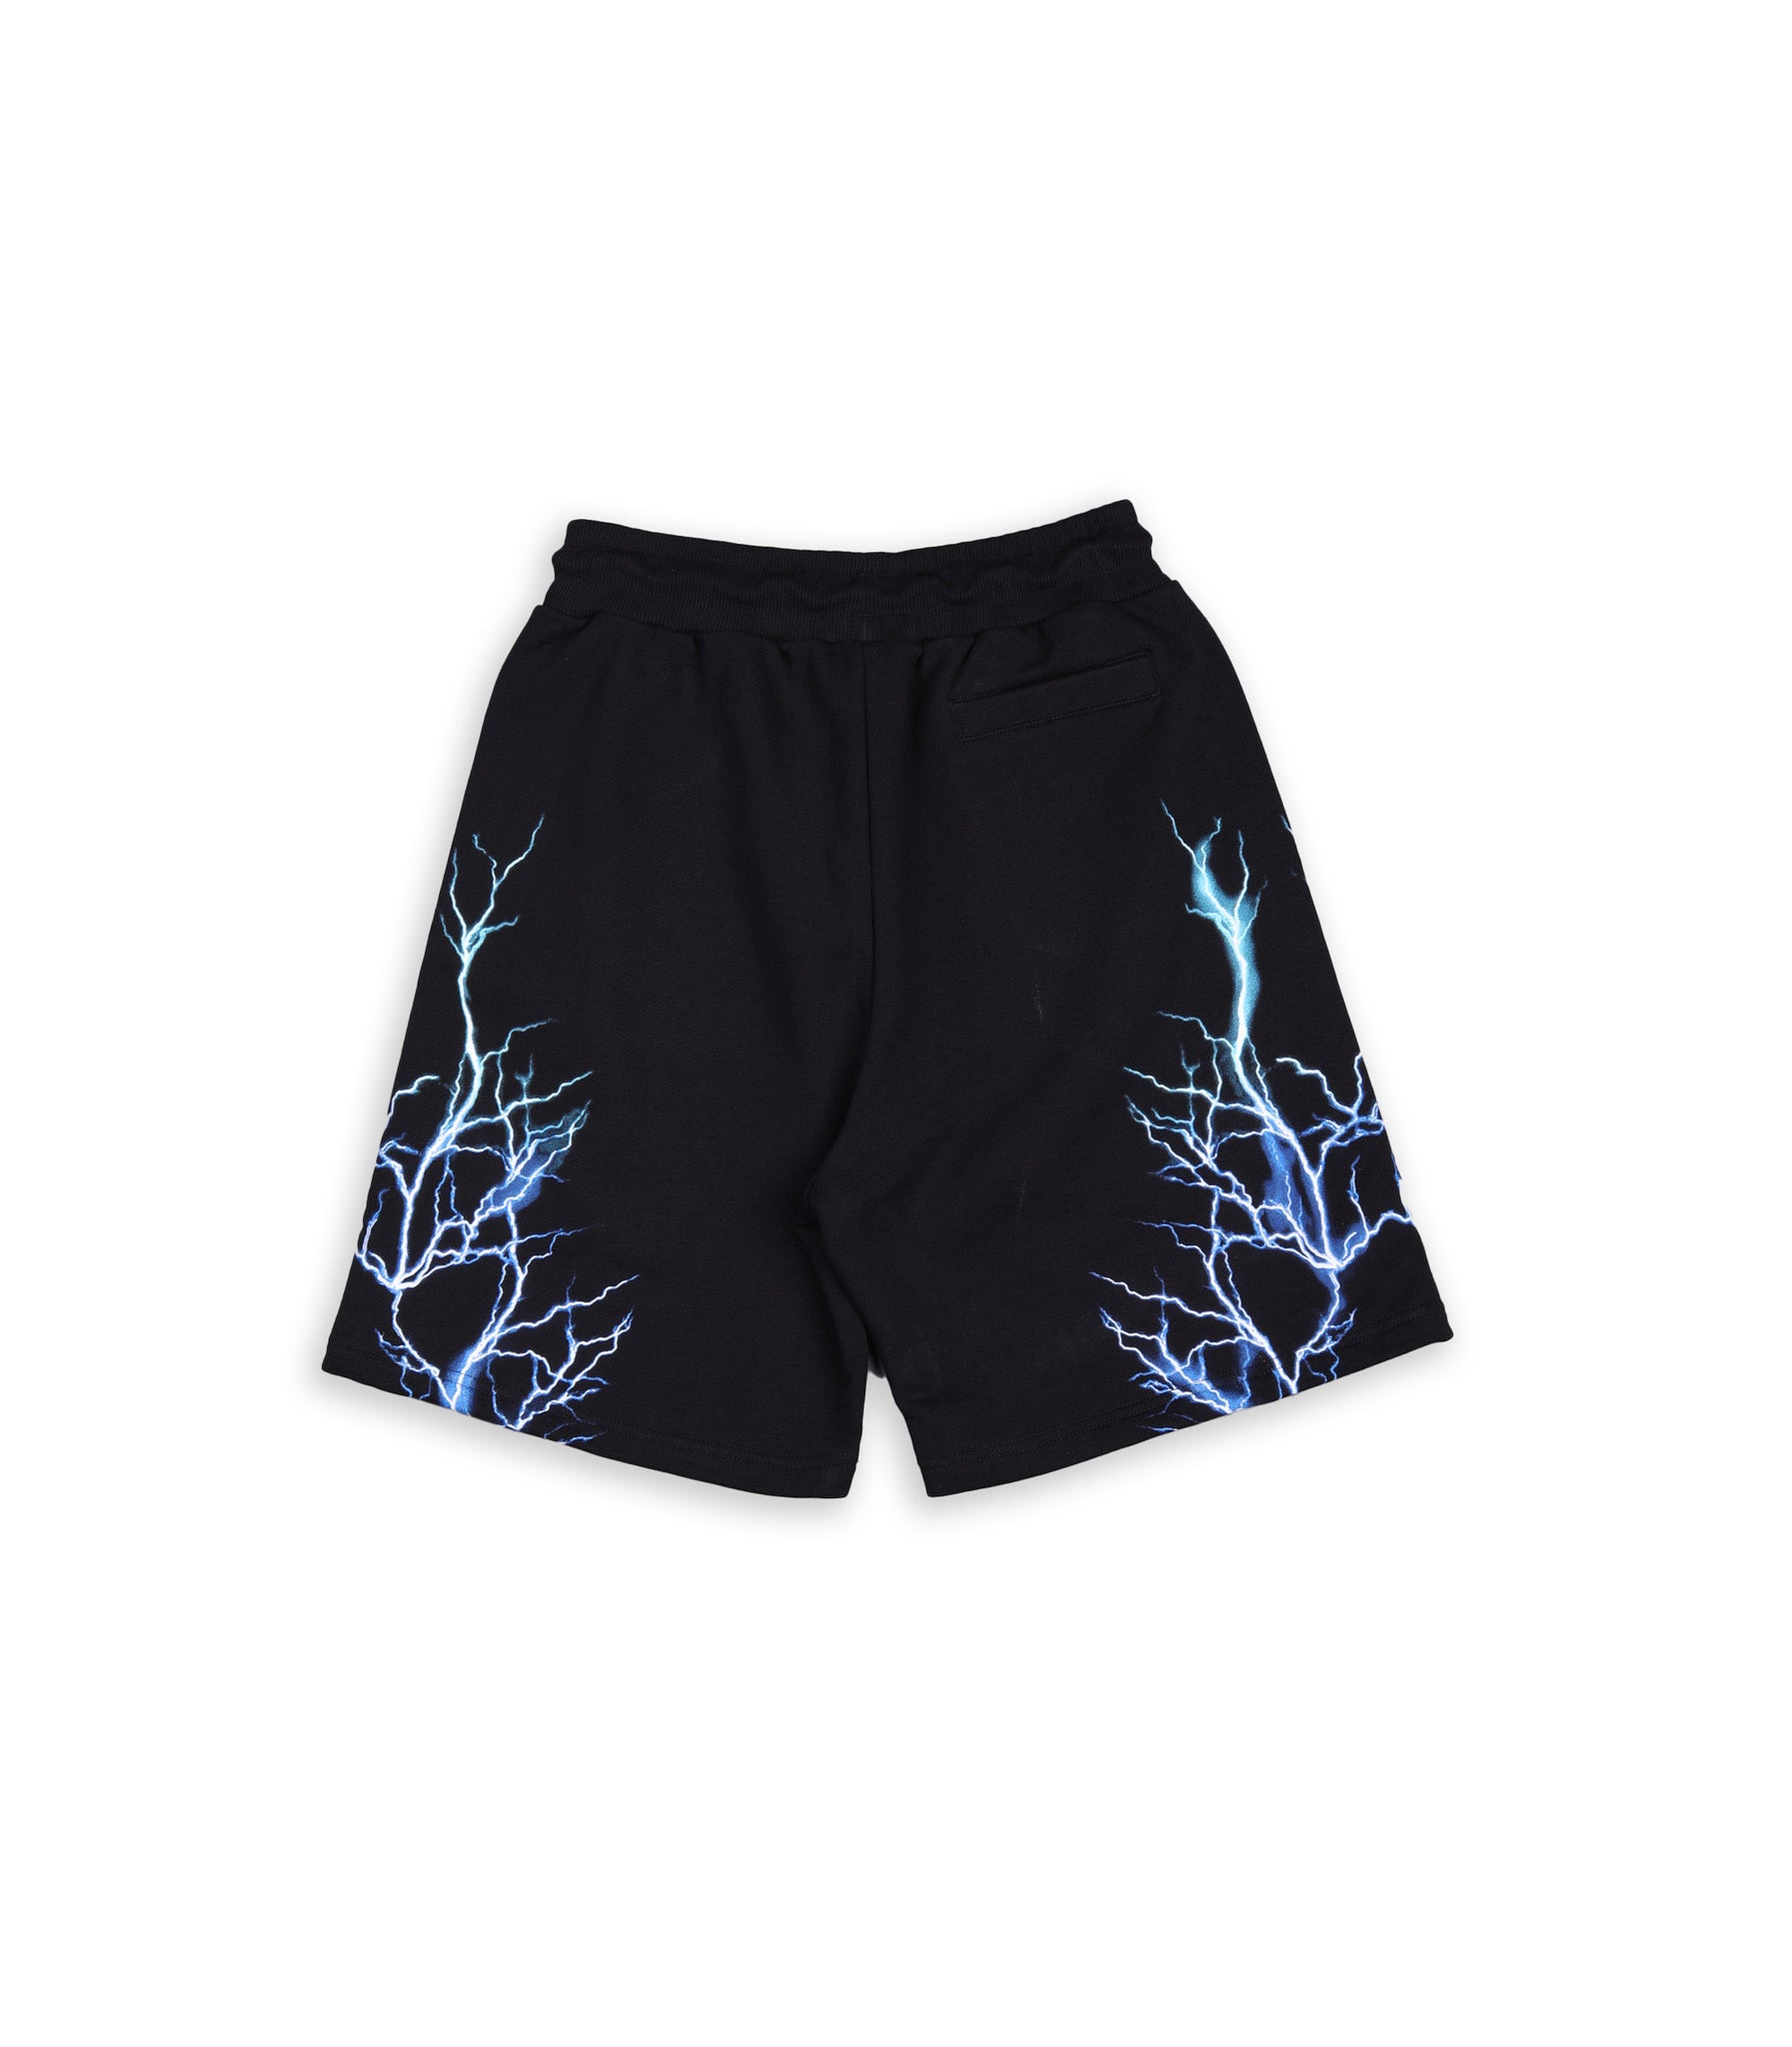 Phobia Black Shorts With Blue And Lightblue Lightning